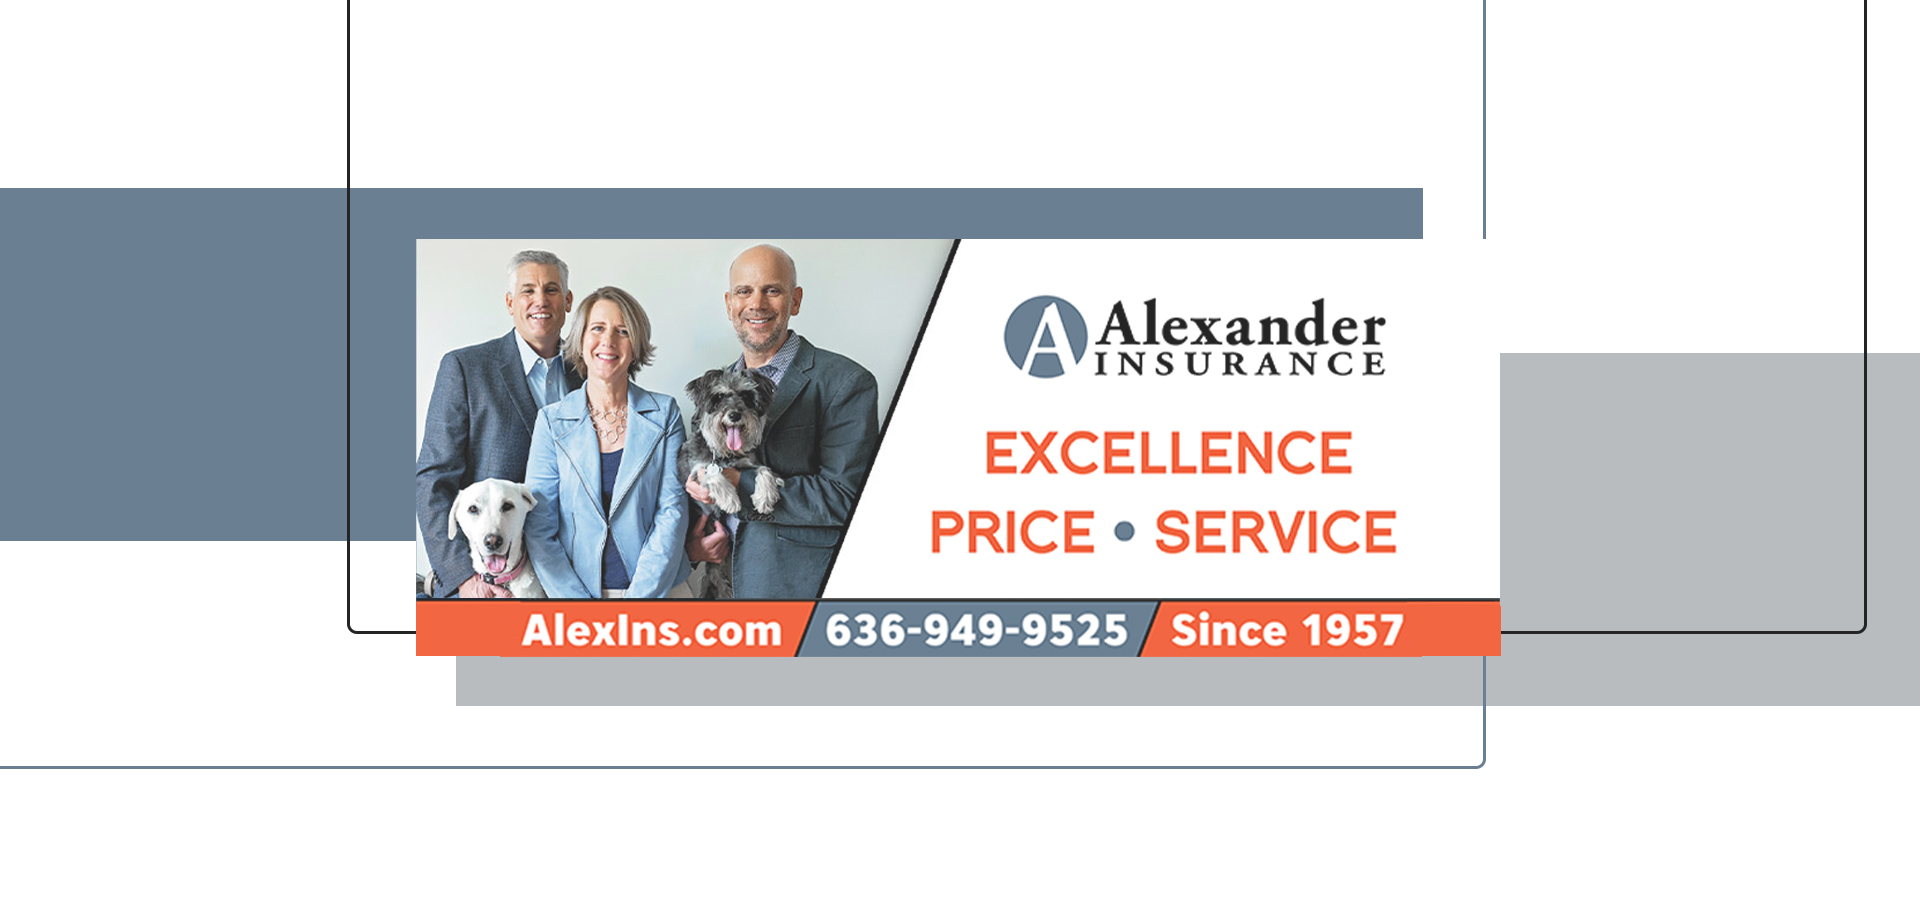 Alexander Insurance St. Charles